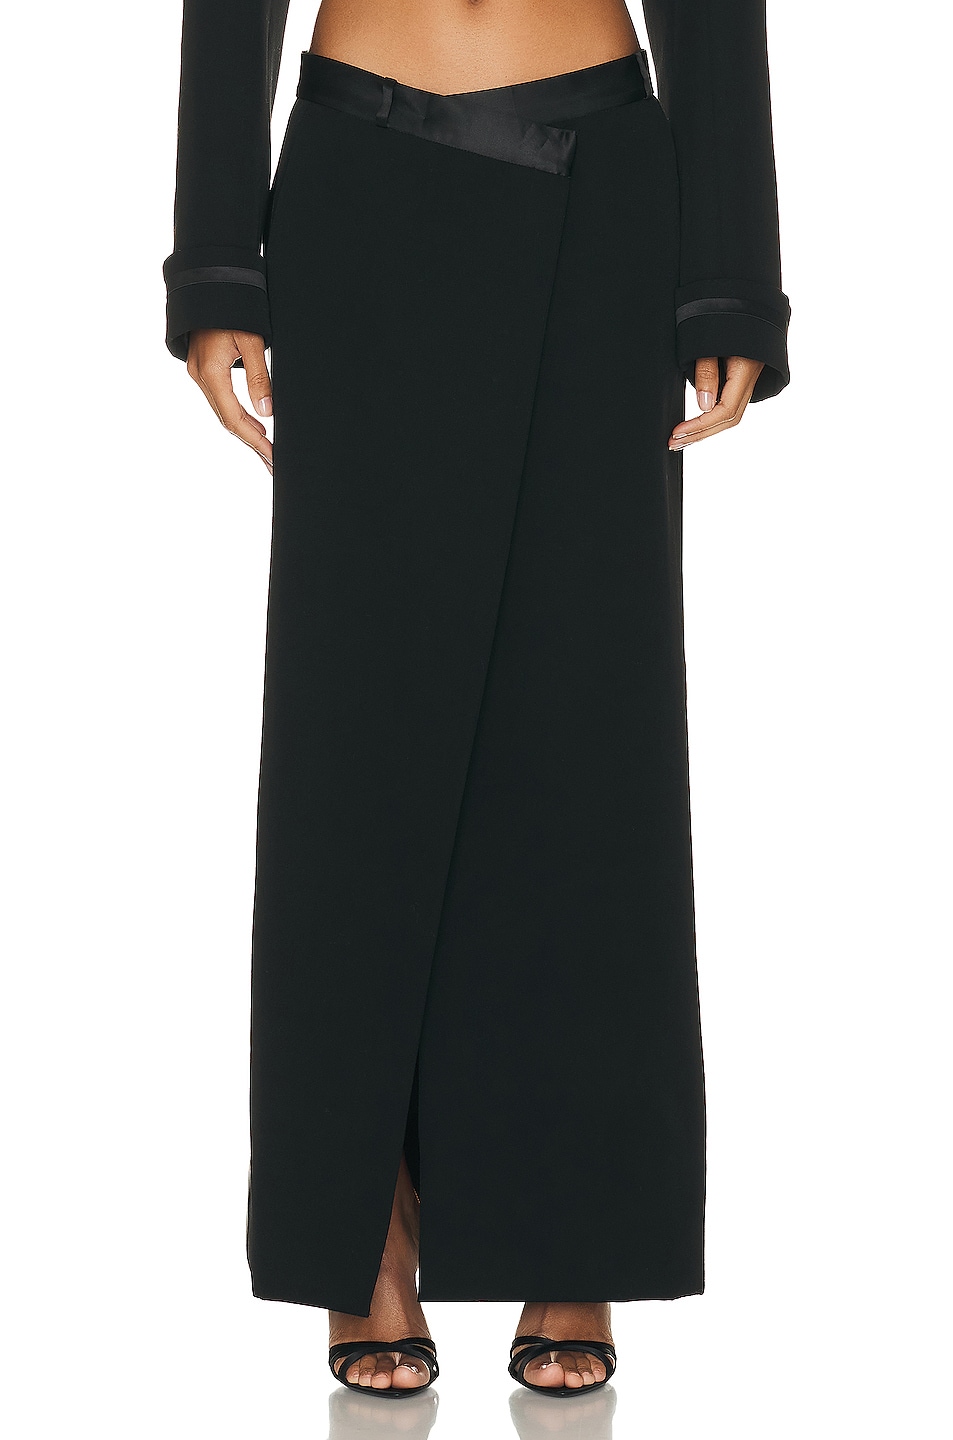 SIMKHAI Clarisse Satin Combo Overlap Maxi Skirt in Black | FWRD